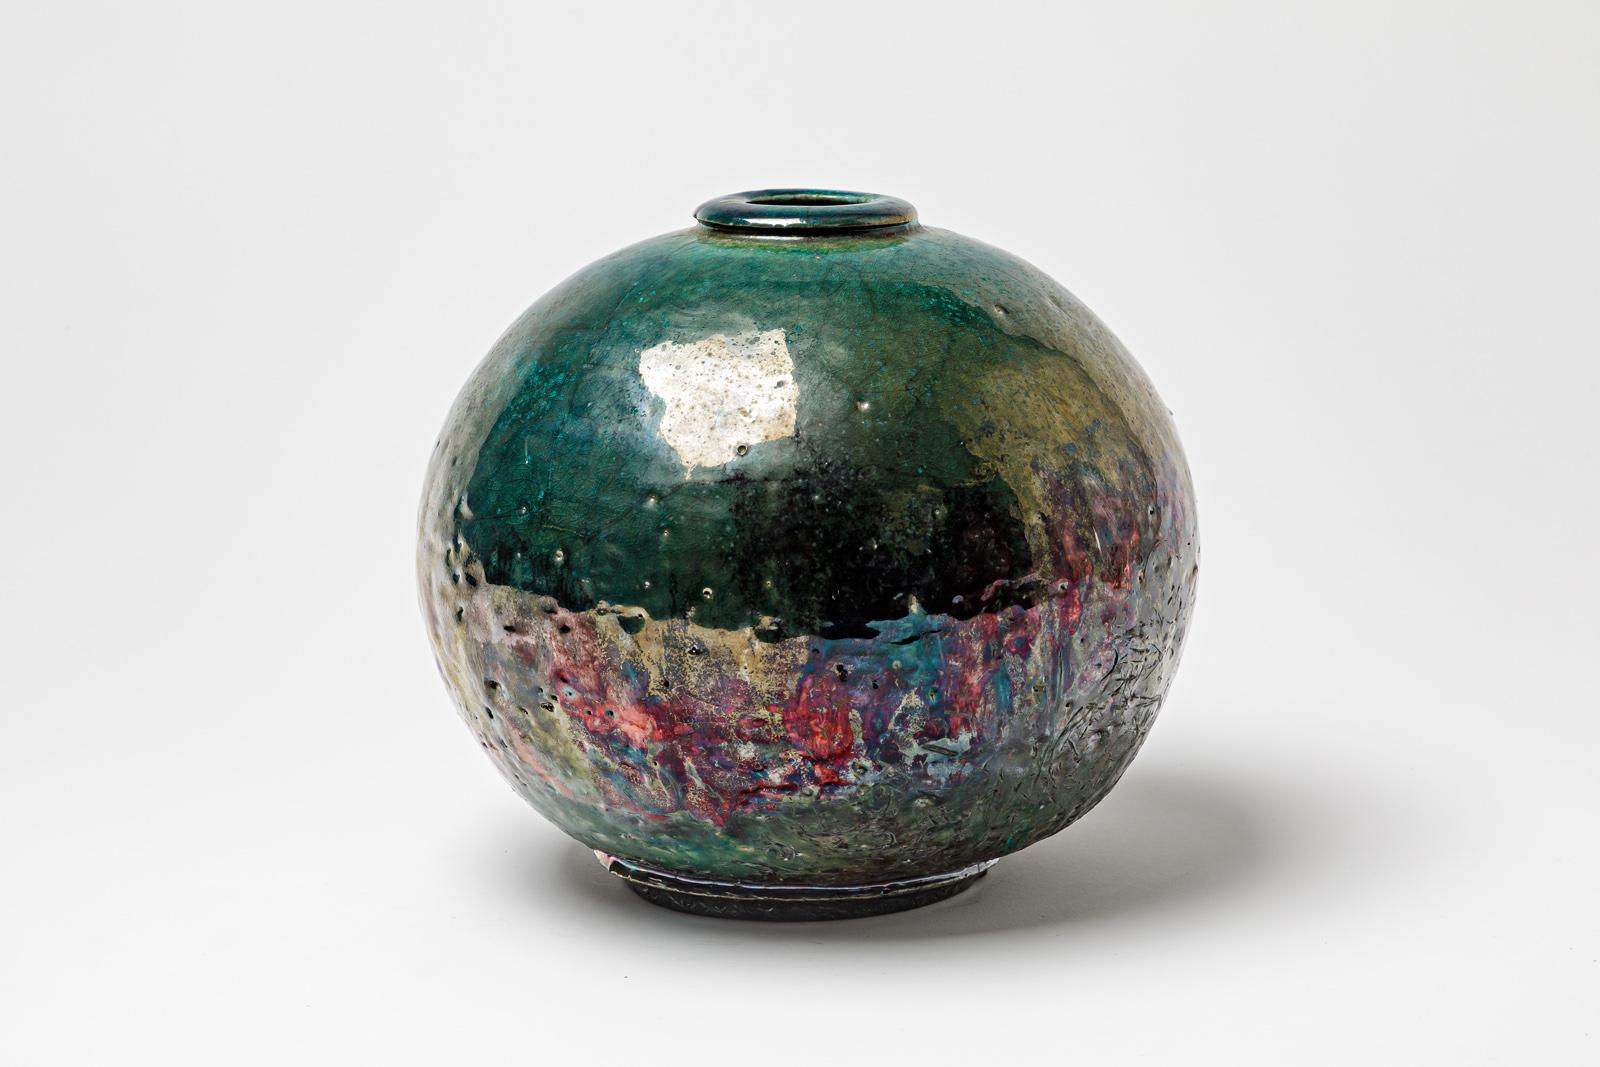 Vase en céramique émaillée verte à reflets métalliques de Gisèle Buthod Garçon. Raku a tiré. Monogramme et signature de l'Artistics sous la base. Vers 1980-1990. 
H : 7.9' x 7.9' pouces.